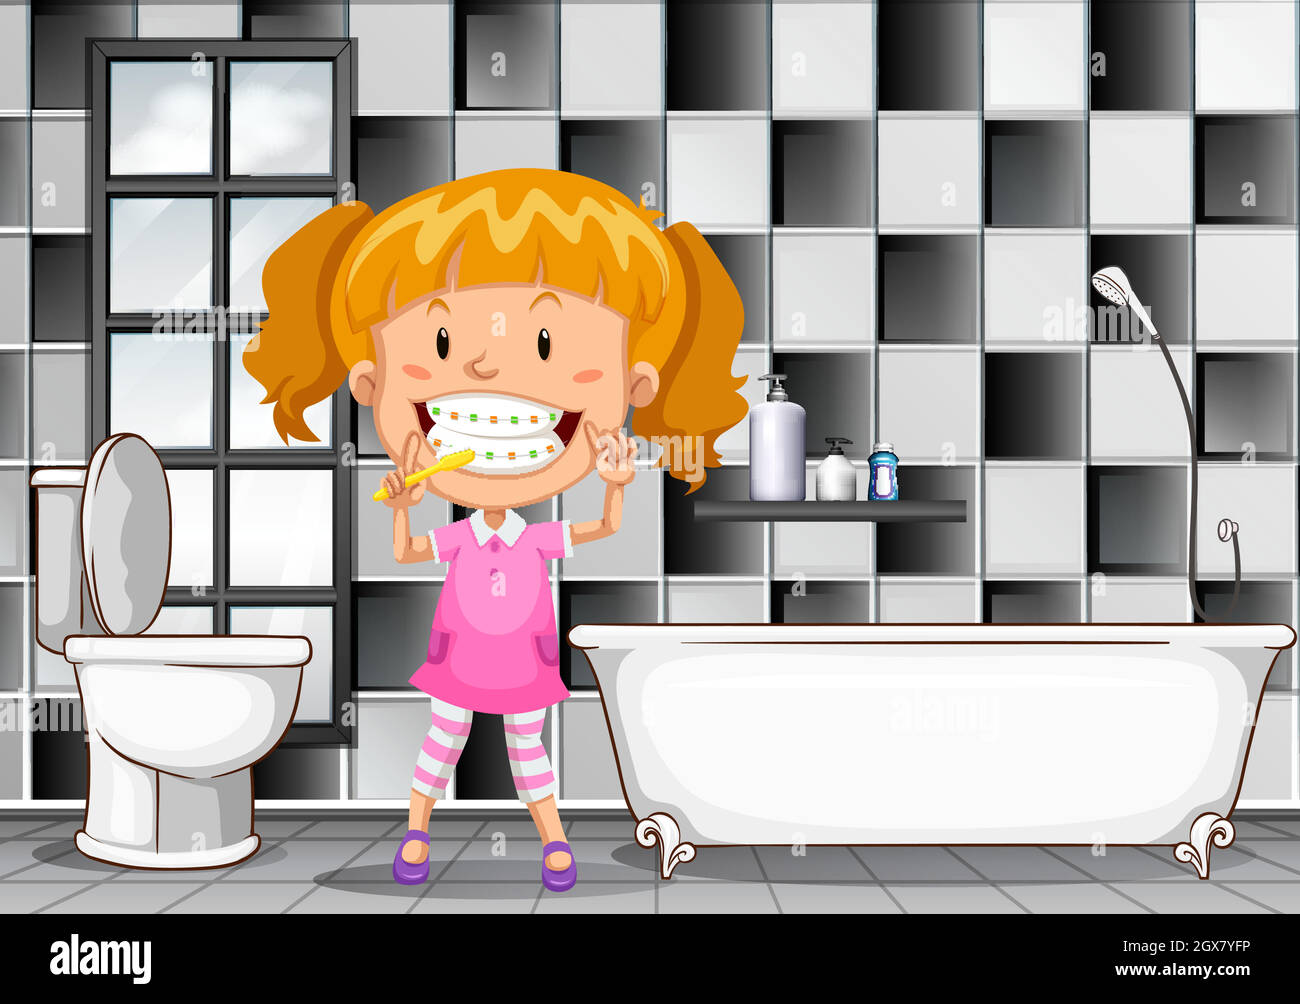 Little girl by toilet Banque d'images vectorielles - Alamy